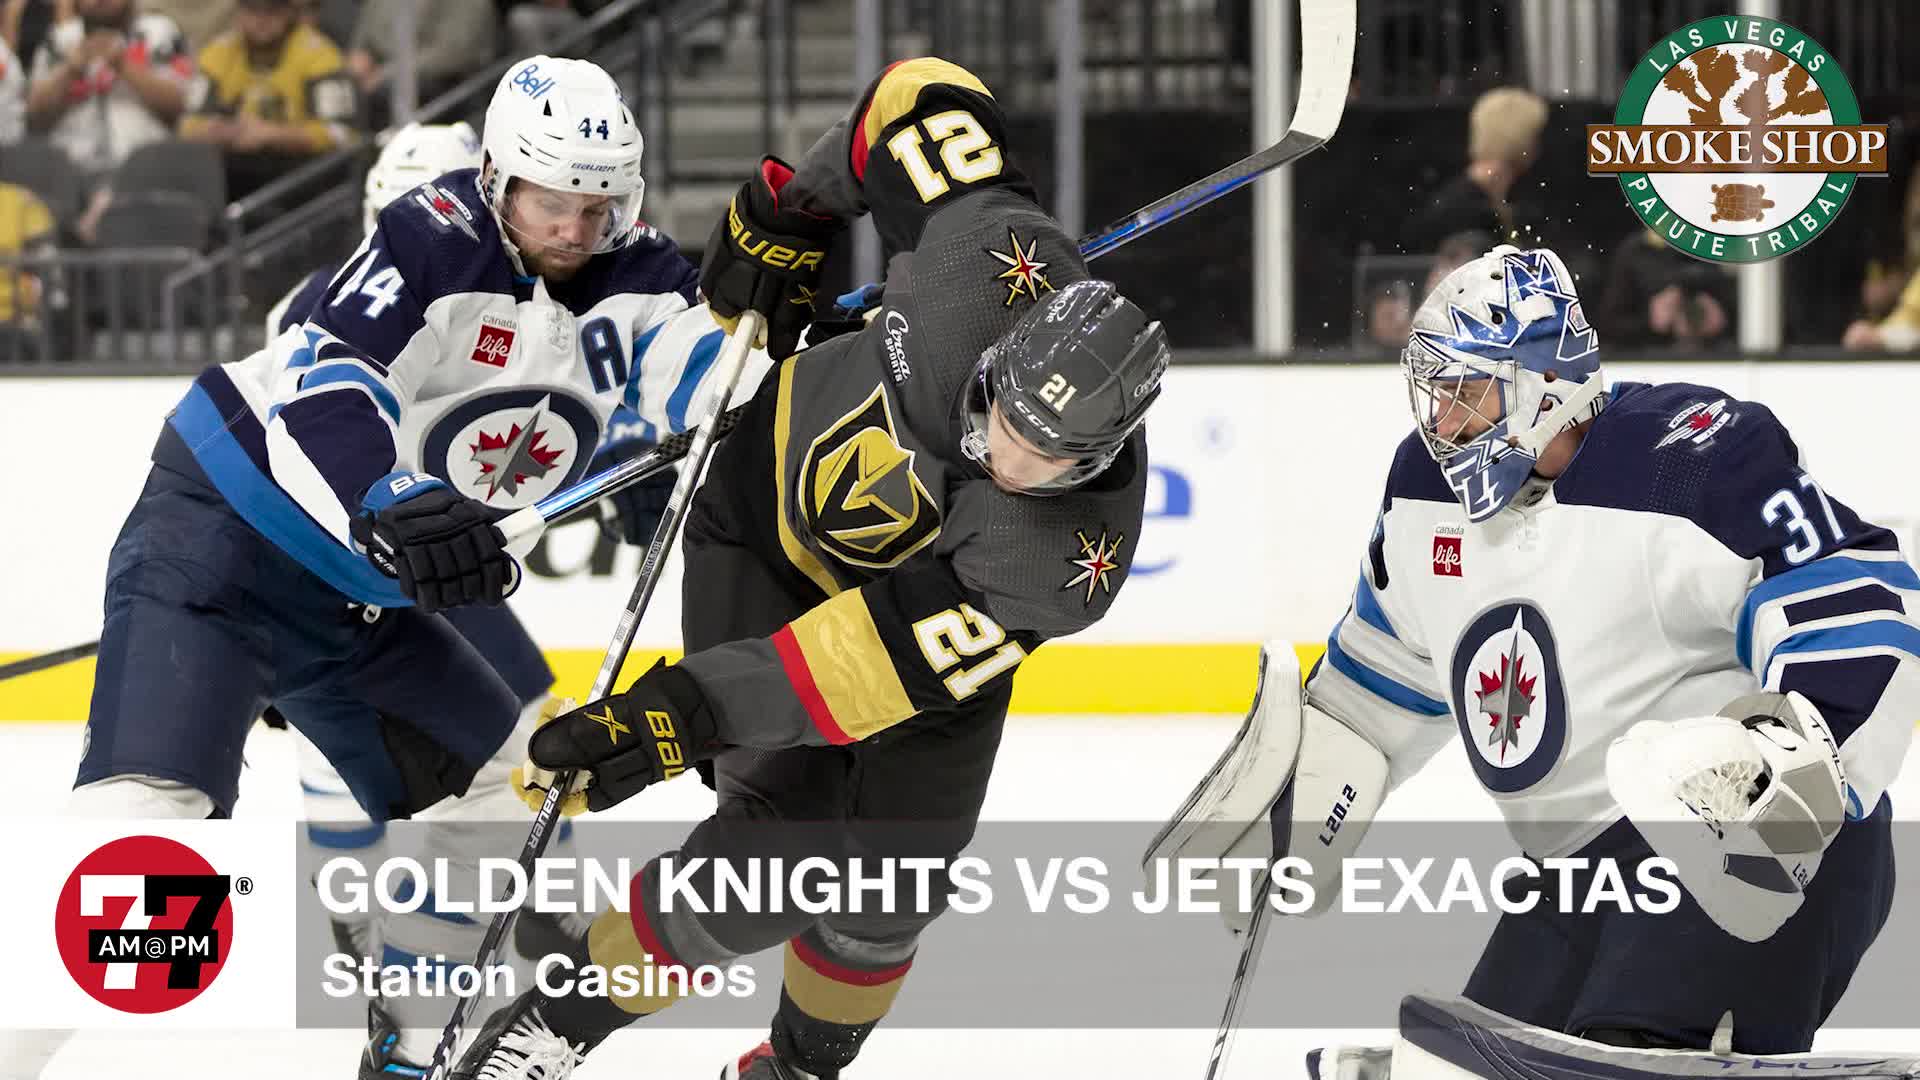 Golden Knights vs Jets exactas